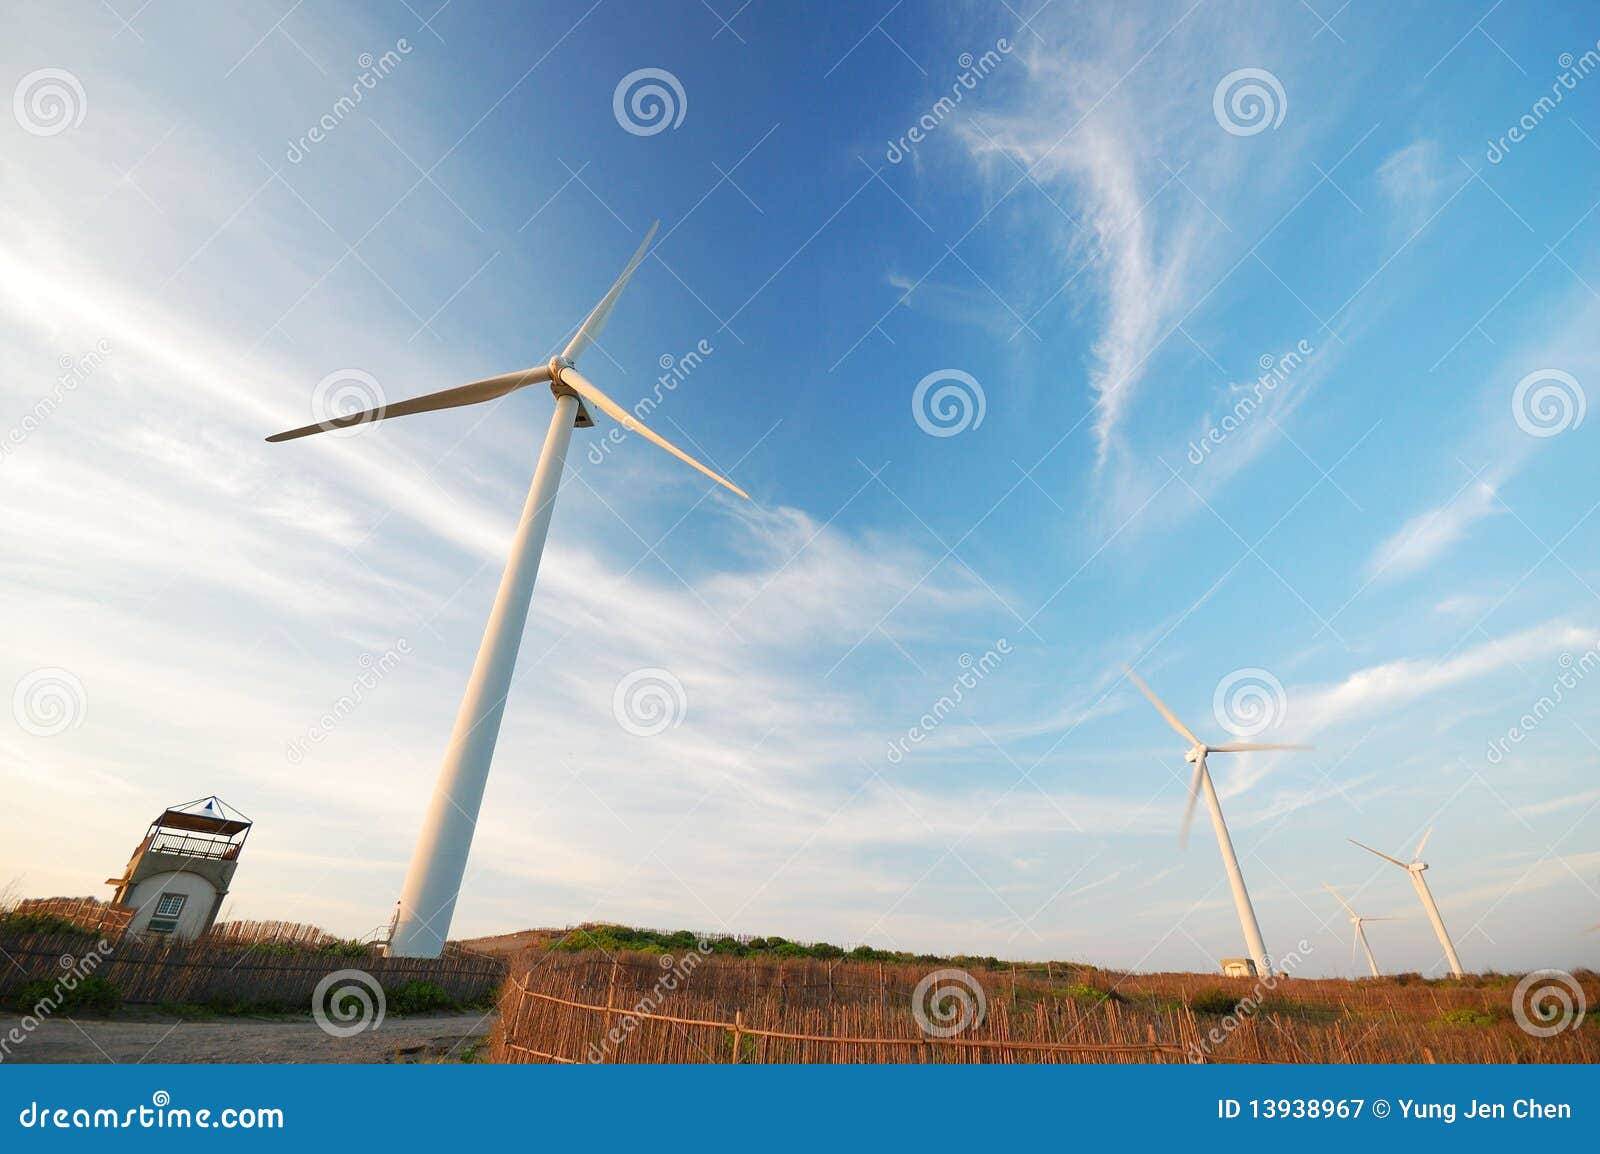 windpower scape